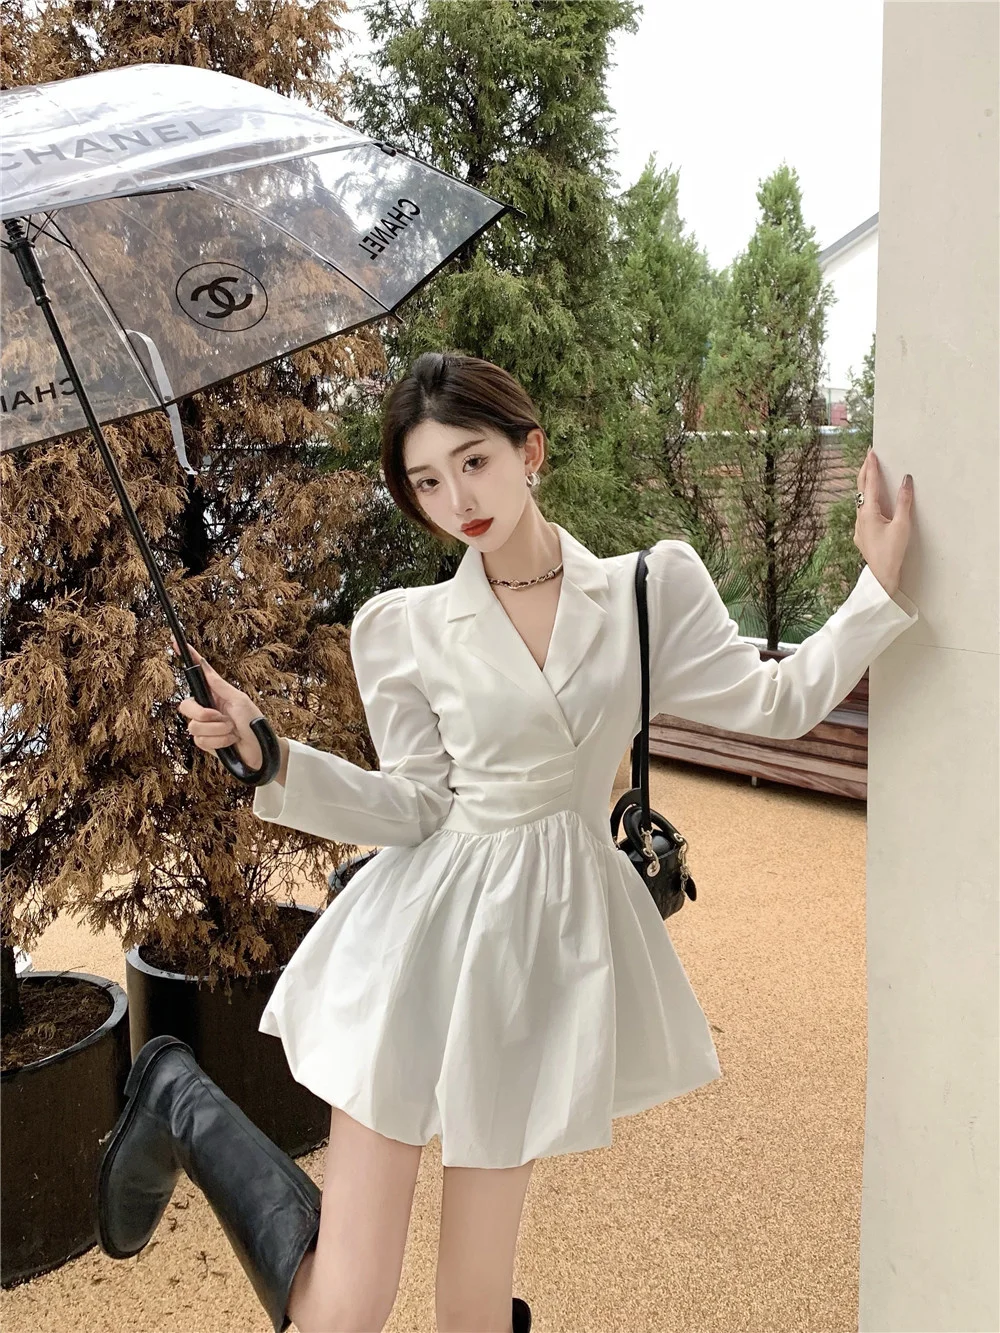 Женское платье-костюм с длинным рукавом белое тонкое платье короткой юбкой и